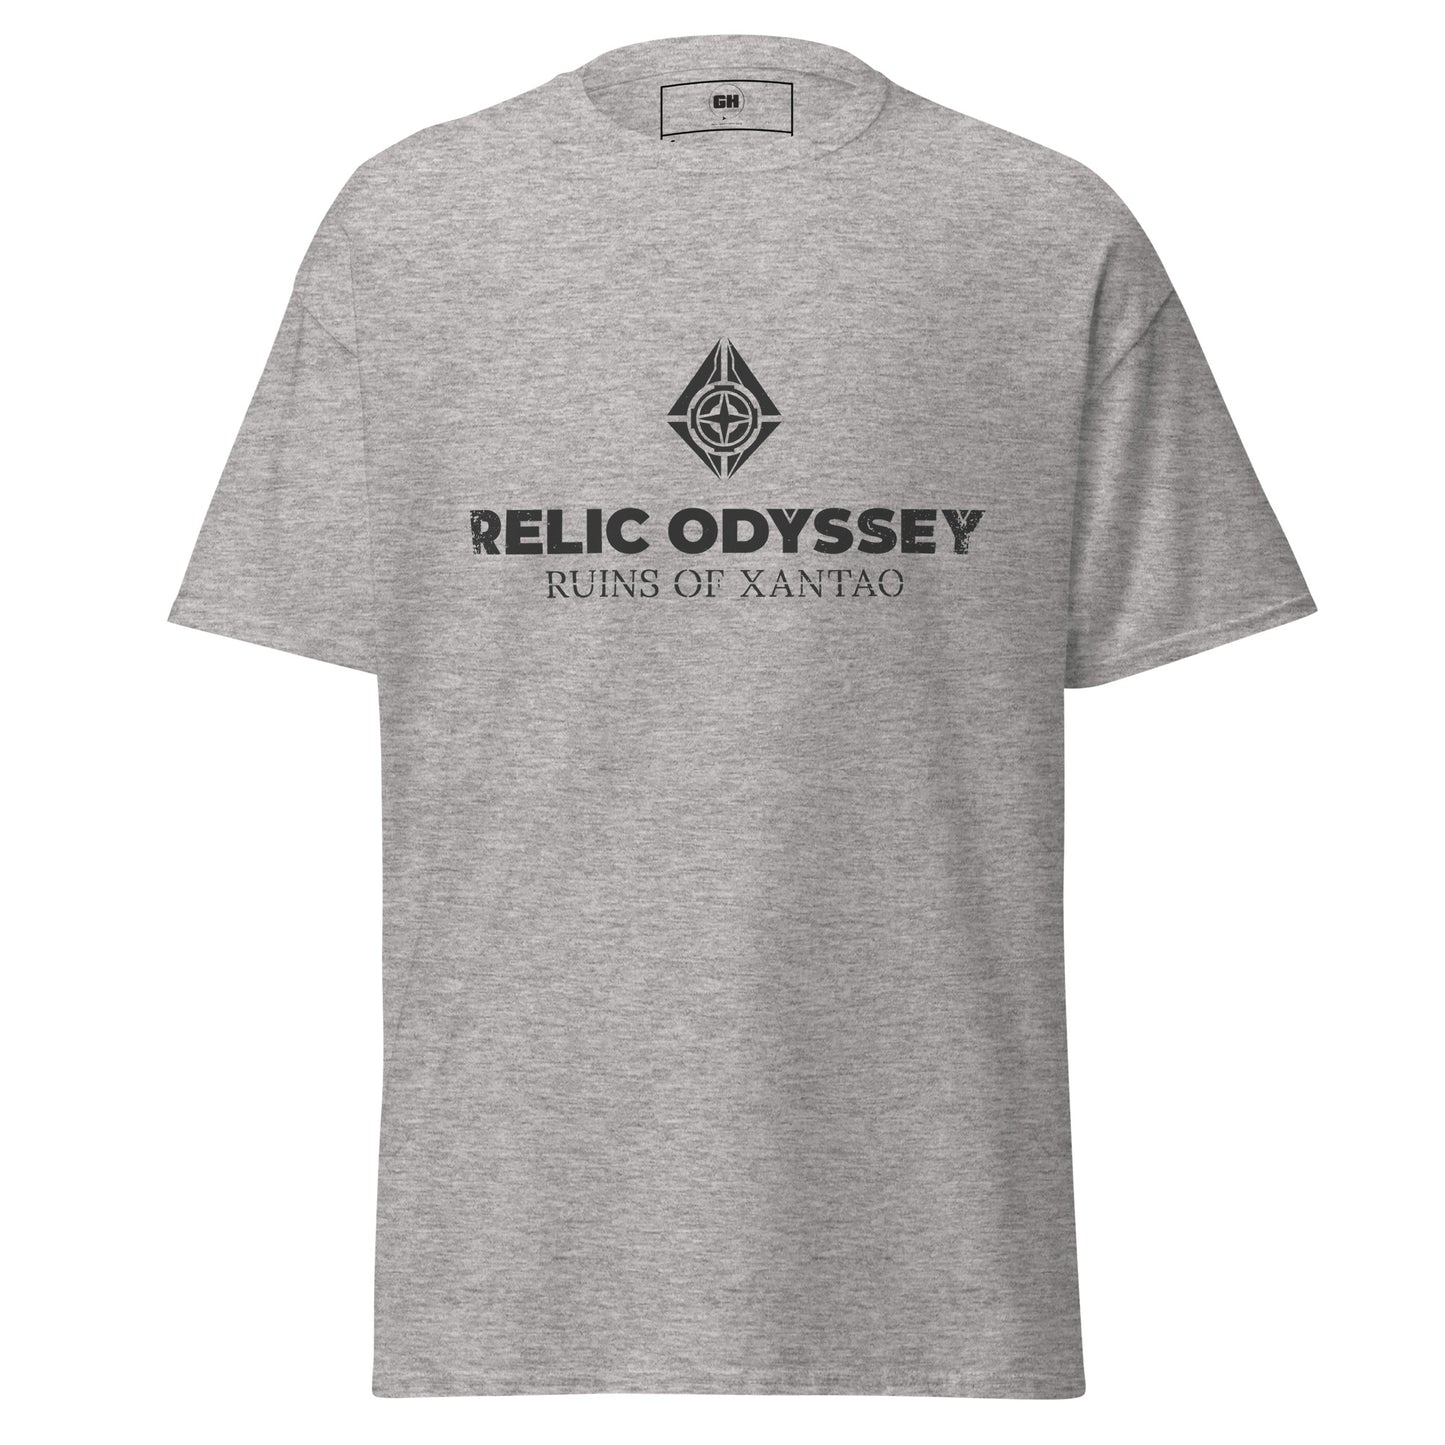 Relic Odyssey - Men's classic tee